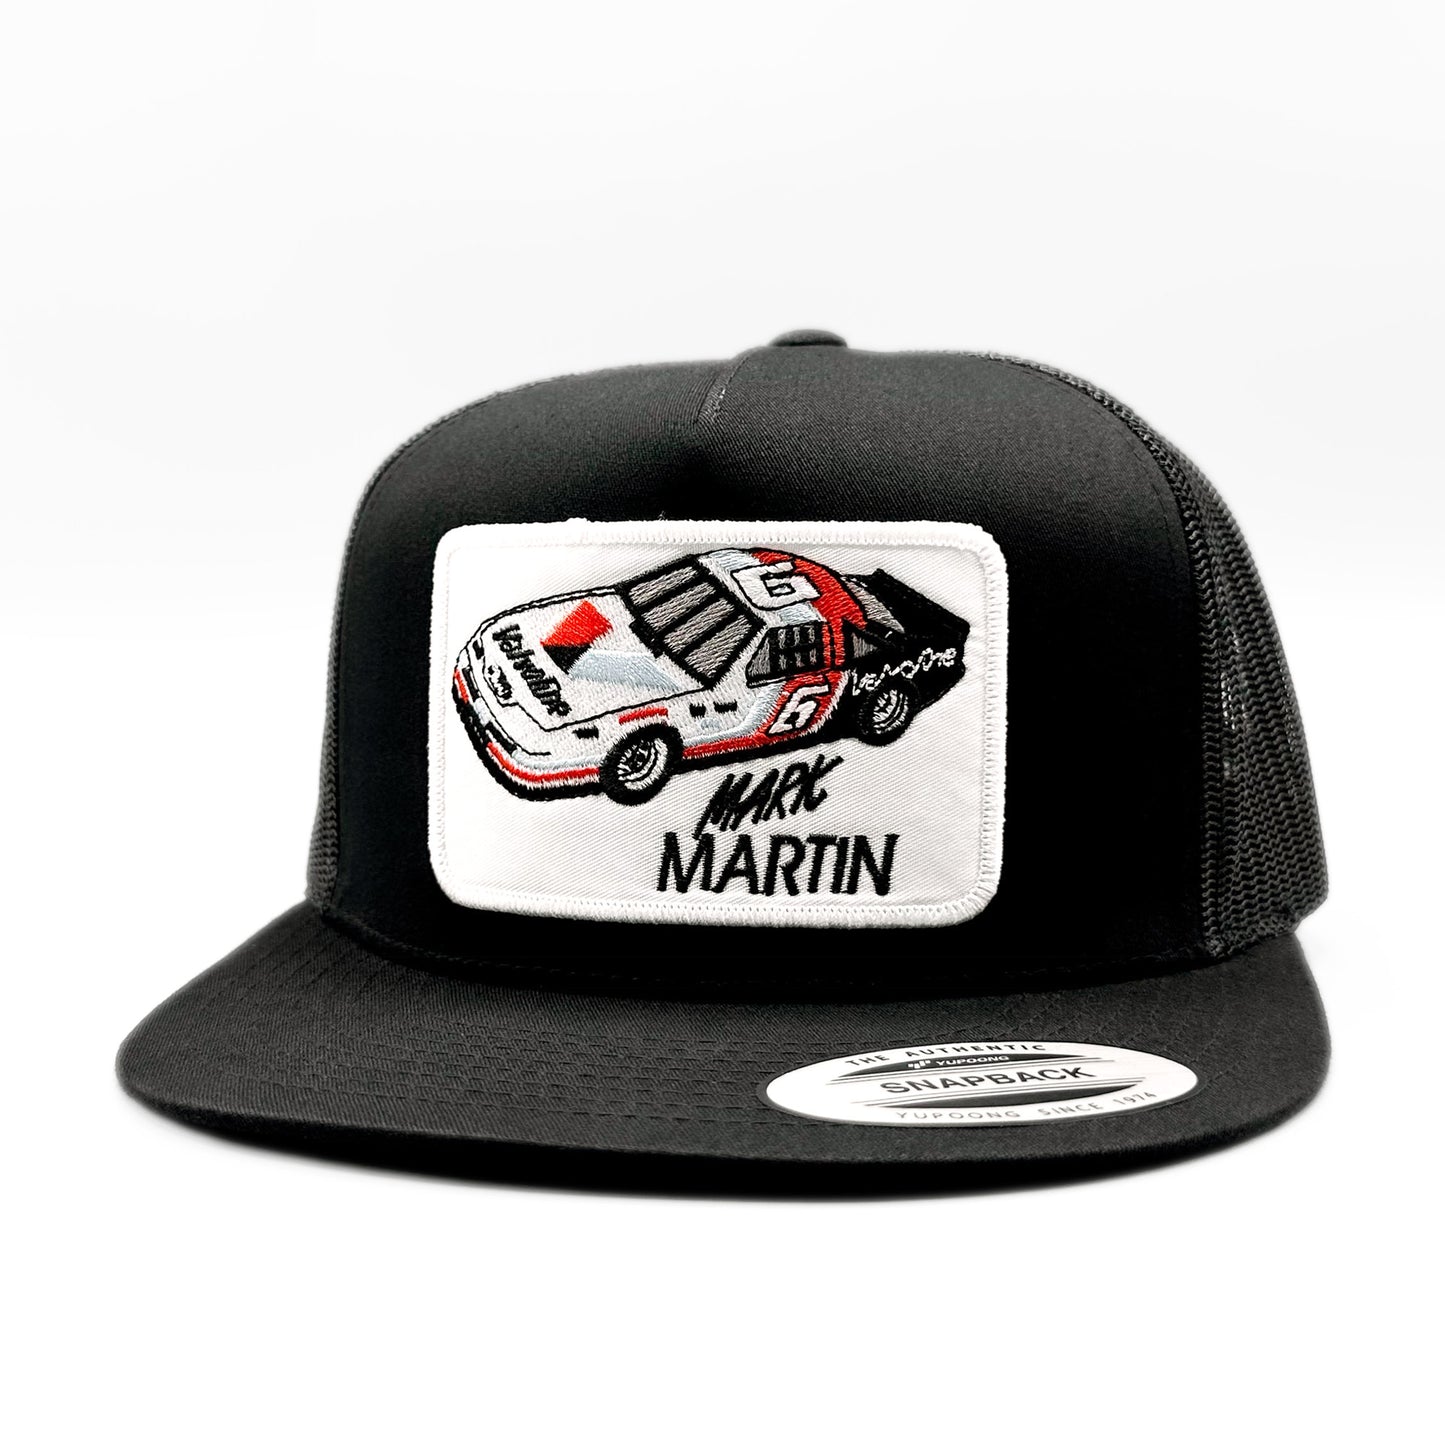 Mark Martin Nascar Racing Trucker